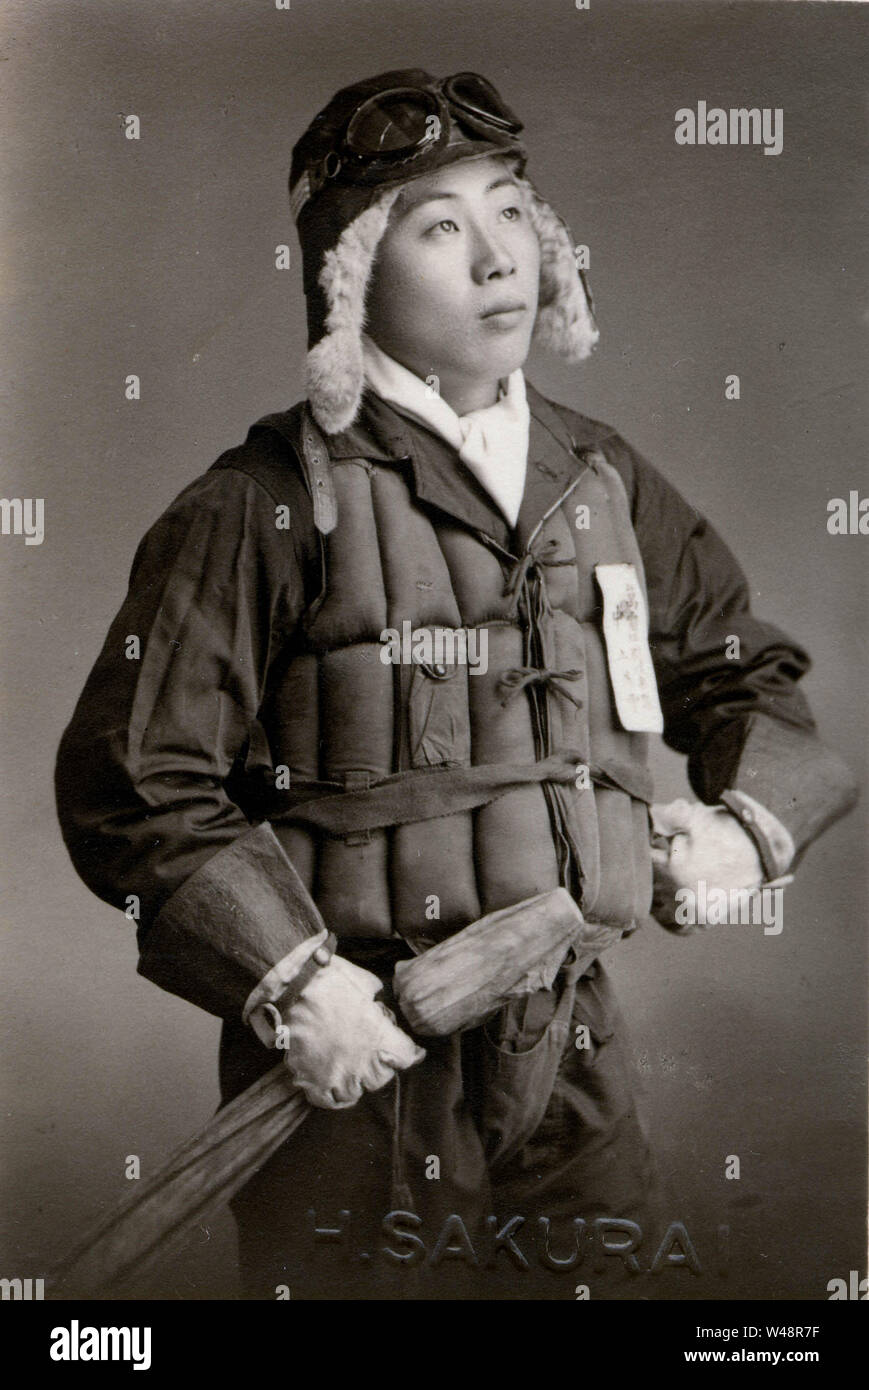 [1940 Japan - Kamikaze Pilot in Uniform] - Mitglied der Tokubetsu Kougekitai (特別攻撃隊, Kamikaze) des japanischen Luftwaffe während des Zweiten Weltkriegs. 20. Jahrhundert vintage Silbergelatineabzug. Stockfoto